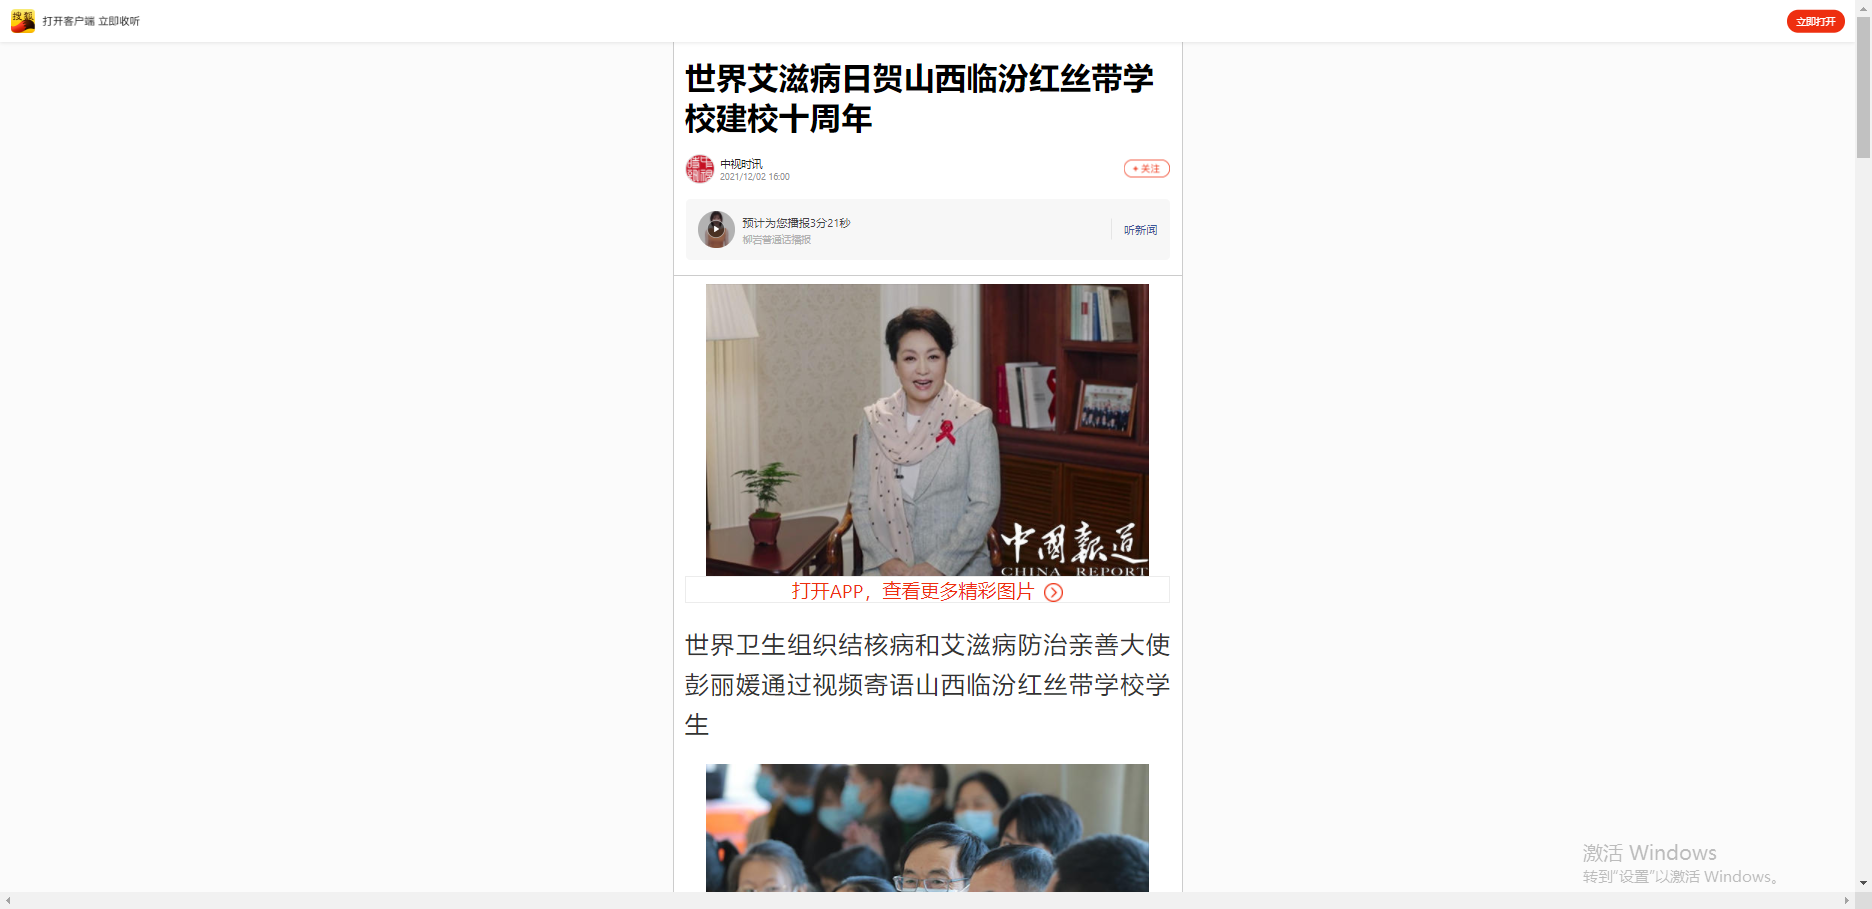 【搜狐】世界艾滋病日贺山西临汾红丝带学校建校十周年